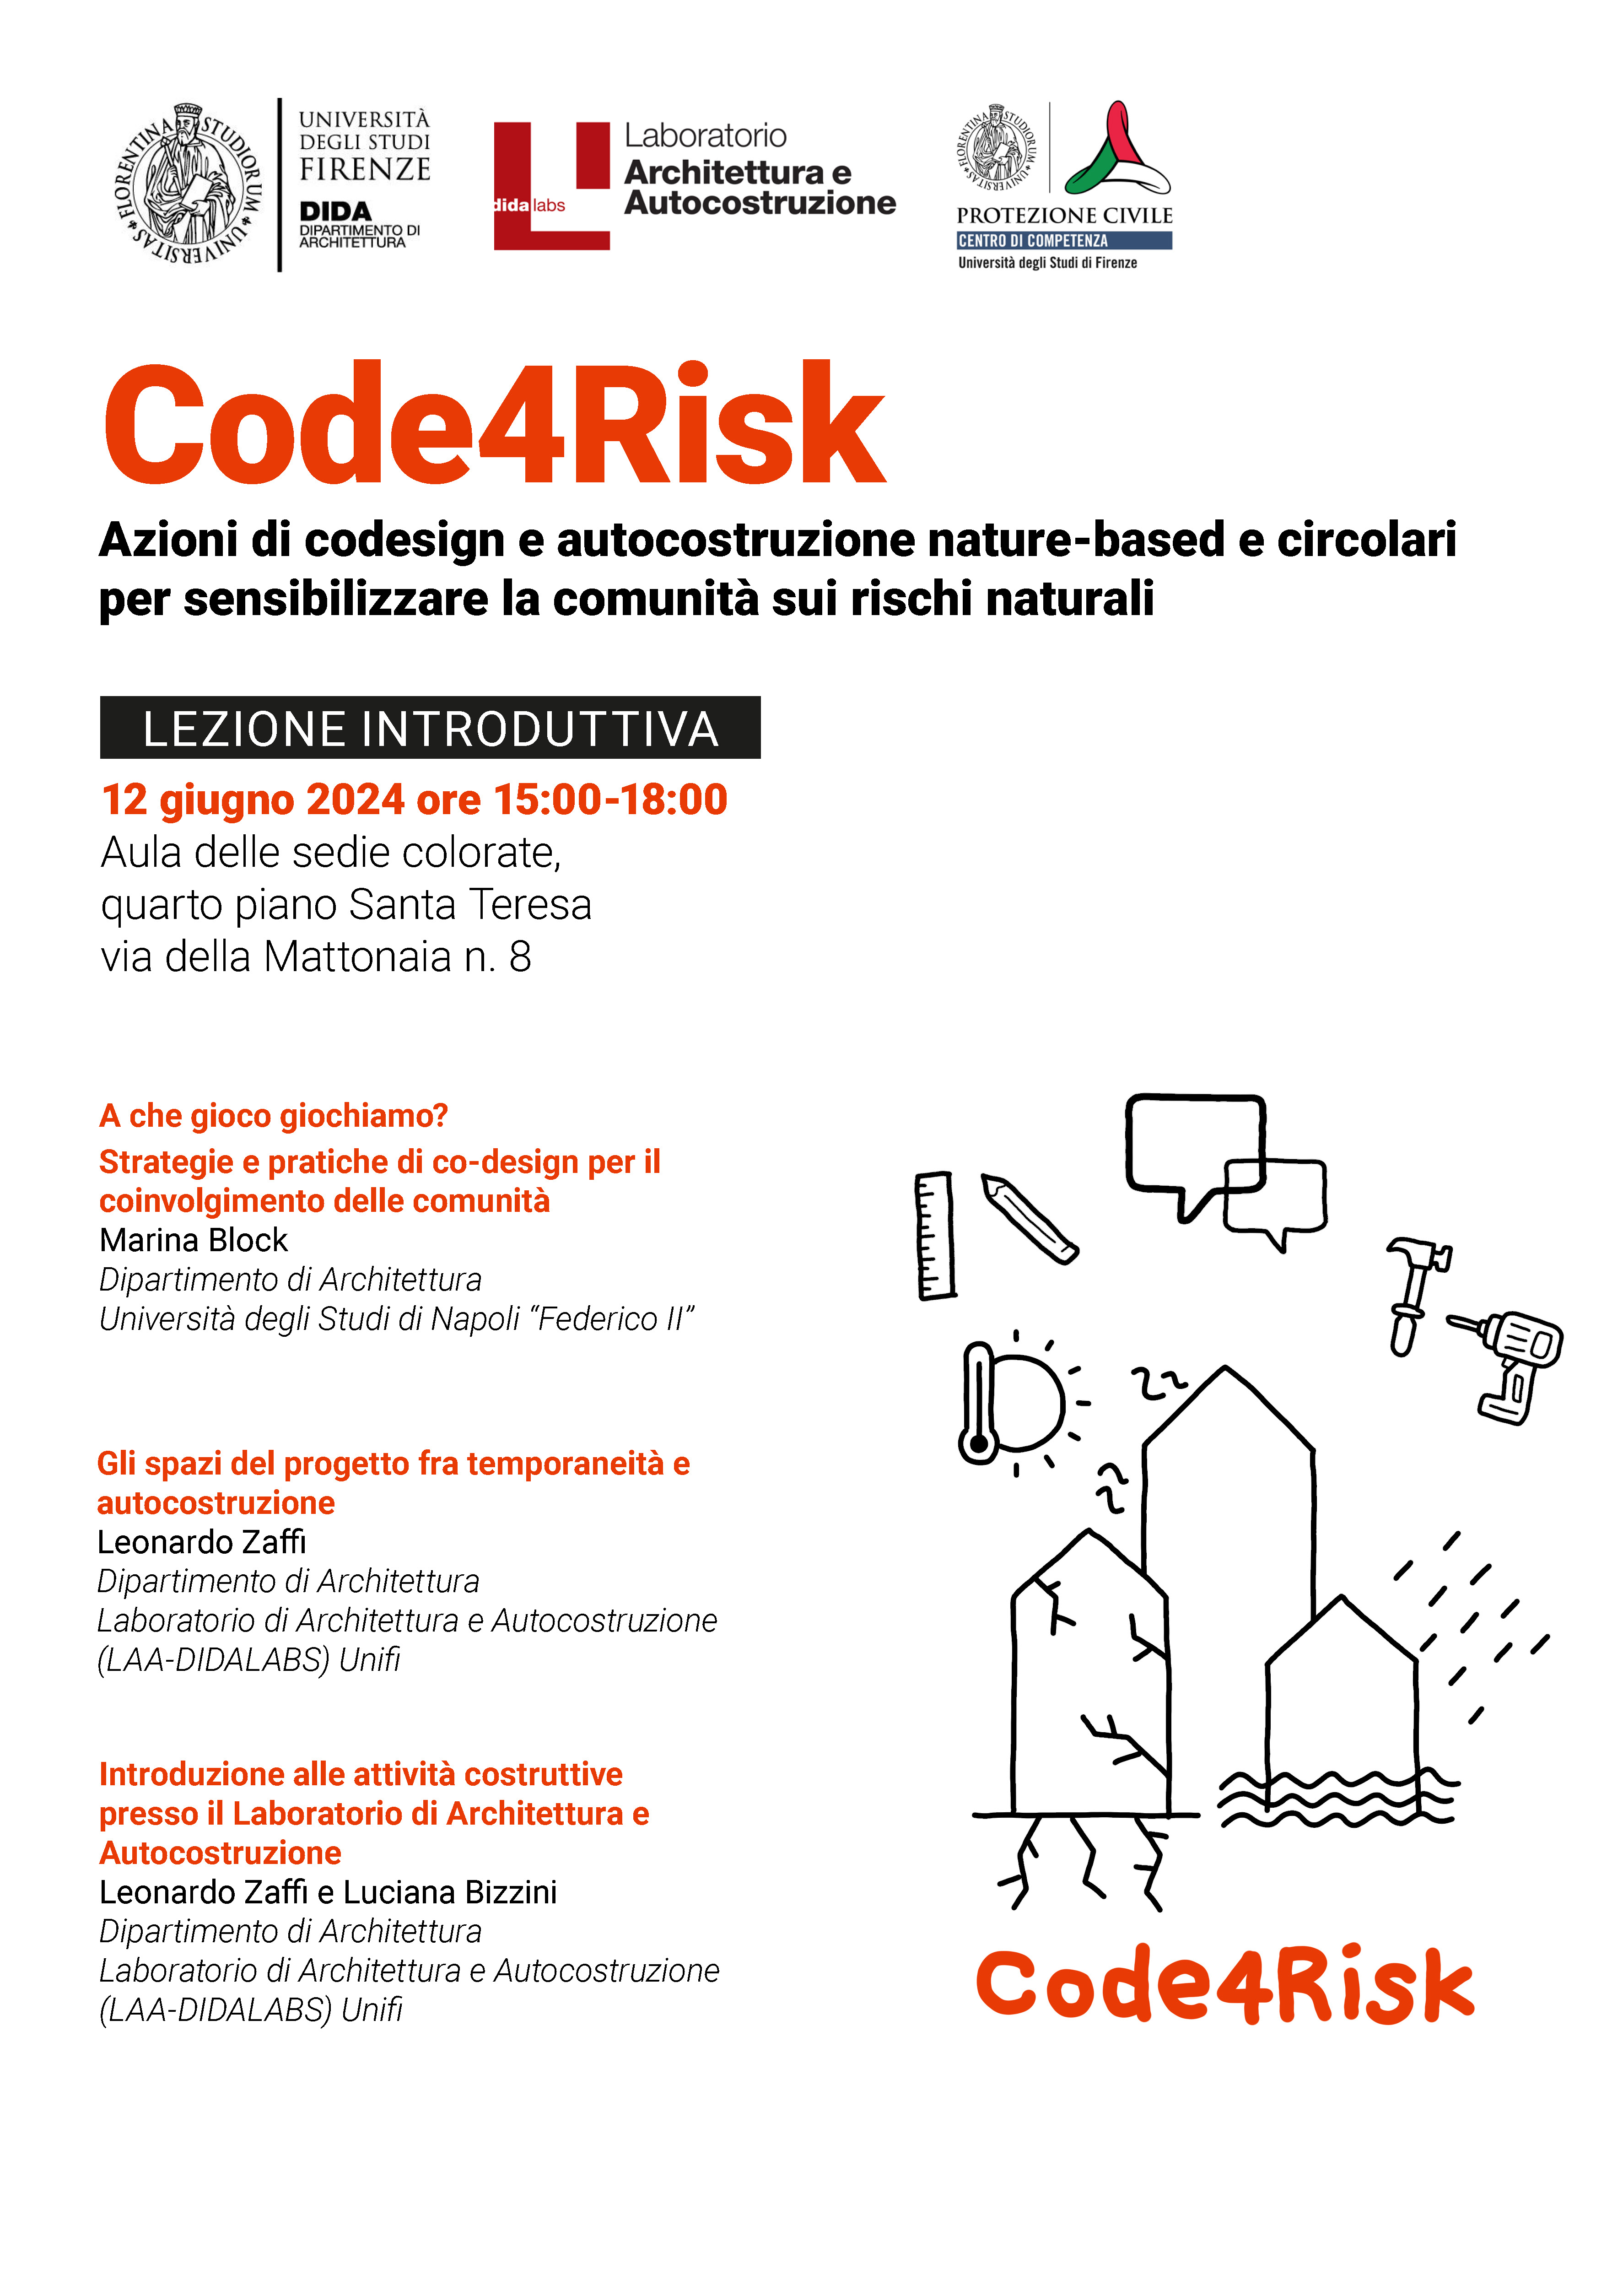 Azioni di codesign e autocostruzione nature-based e circolari per sensibilizzare la comunità sui rischi naturali